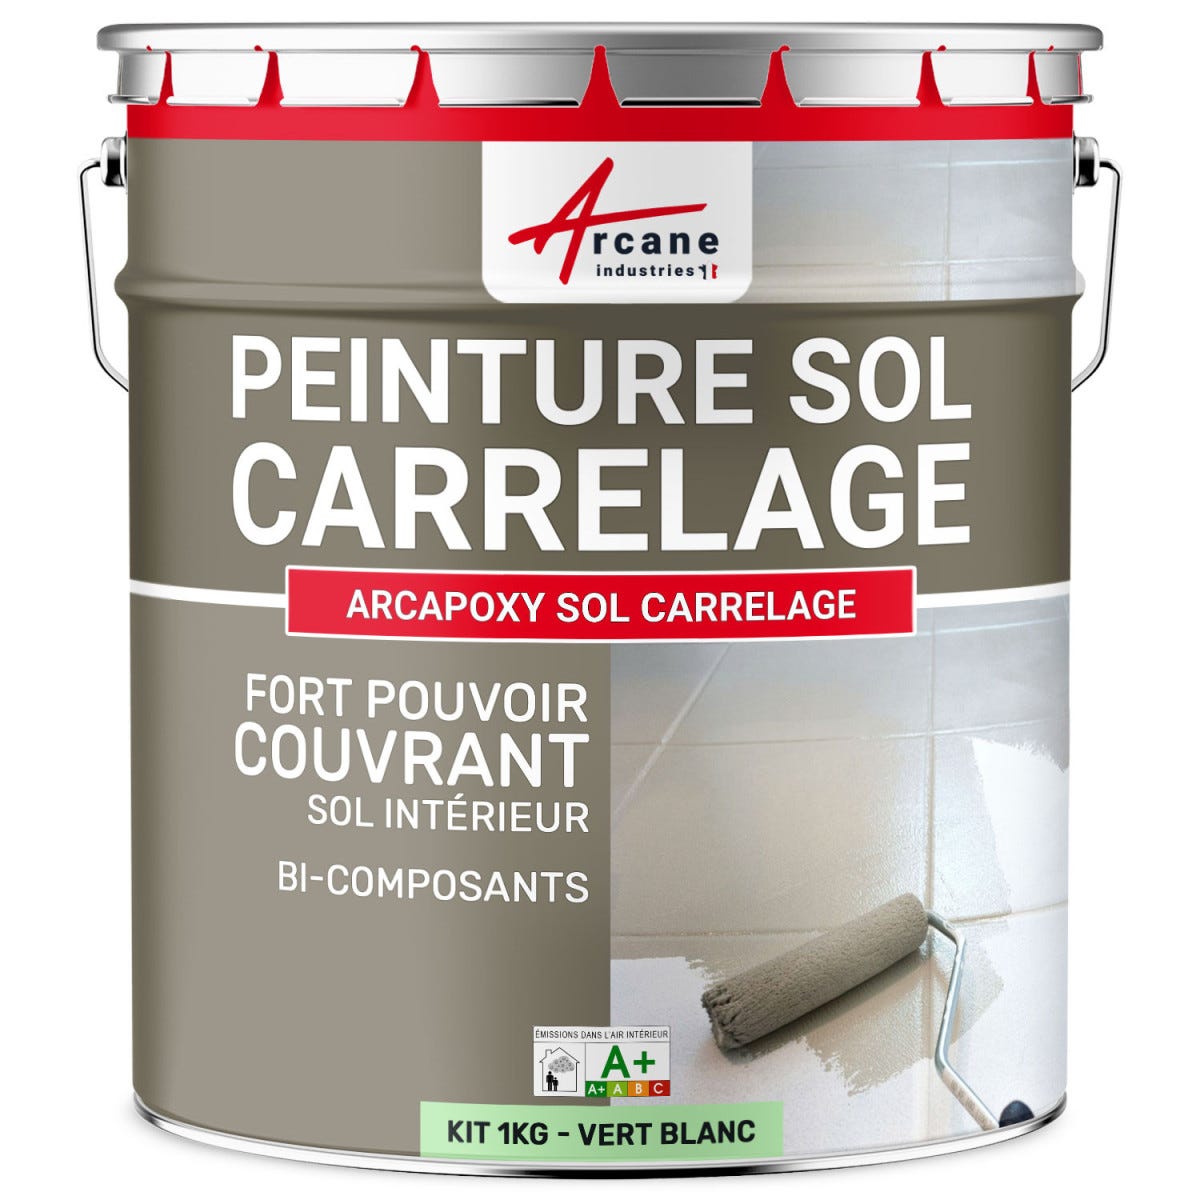 Peinture Résine Sol Carrelage - ARCAPOXY SOL CARRELAGE - 1 kg (jusqu'à 5 m² en 2 couches) - Vert Blanc - RAL 6019 - ARCANE INDUSTRIES 0